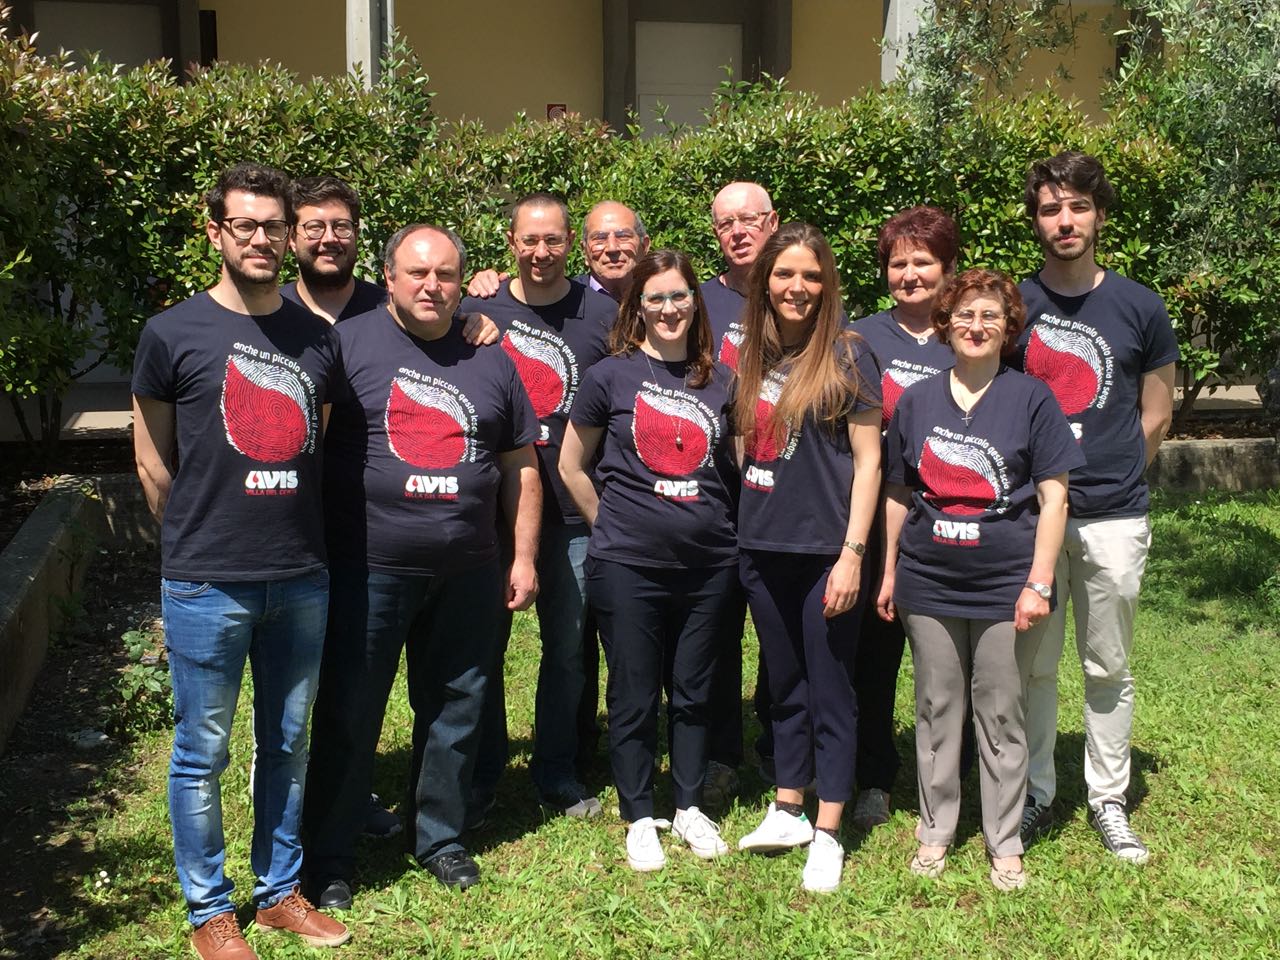 Alcuni dei 19 Consiglieri dell'AVIS di Villa del Conte con le nuove magliette "anche un piccolo gesto lascia il segno"